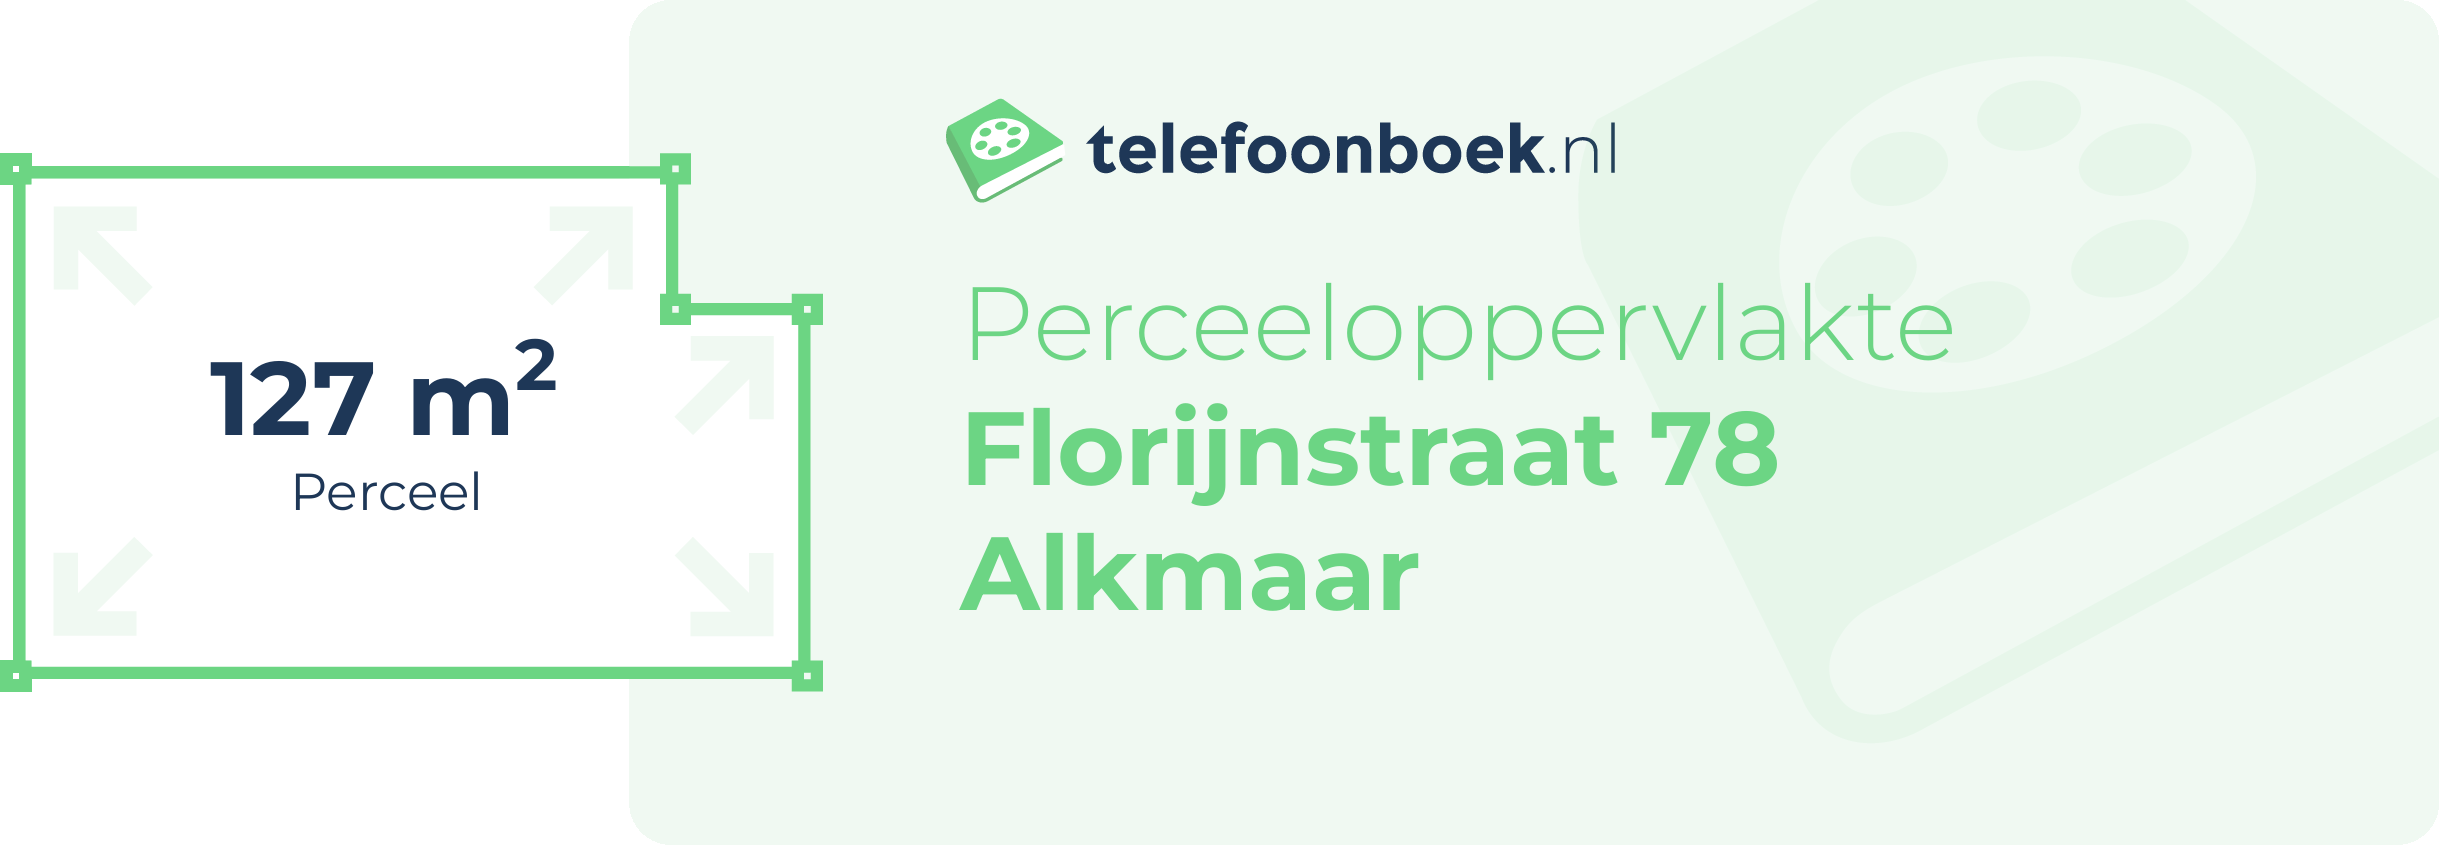 Perceeloppervlakte Florijnstraat 78 Alkmaar